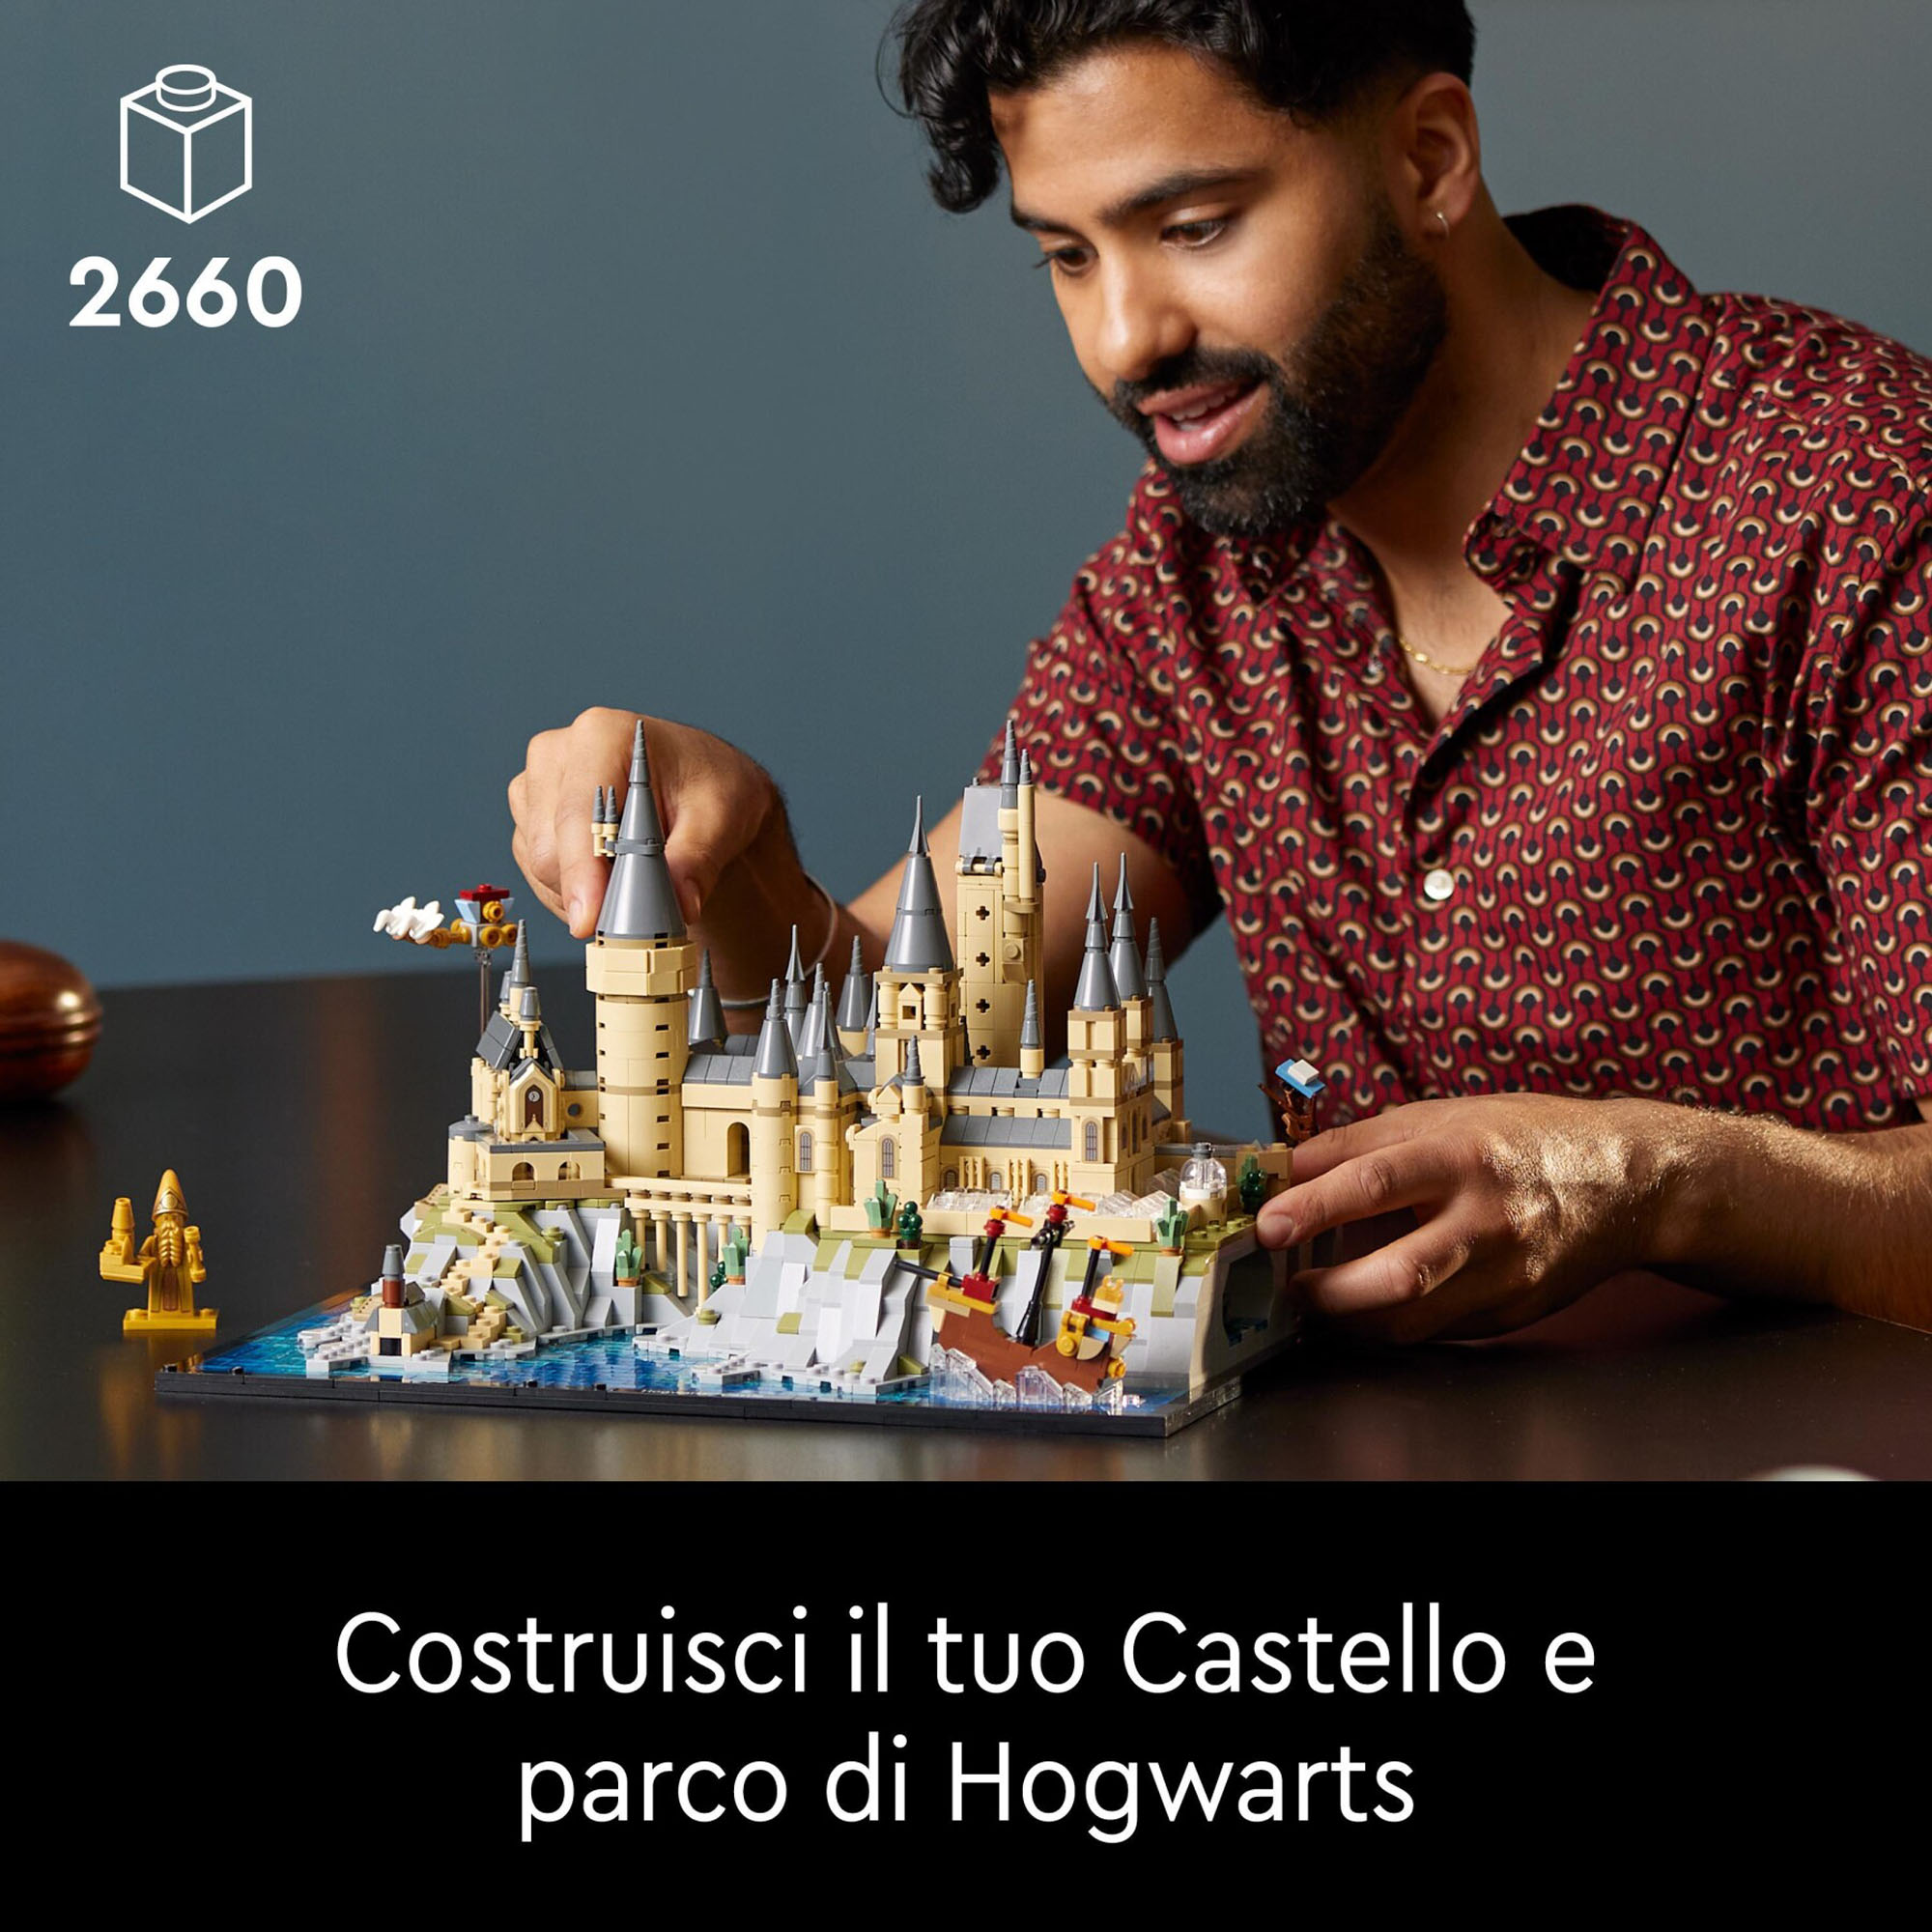 LEGO Harry Potter 76419 Castello e Parco di Hogwarts con Torre dell'Astronomia, Sala Grande e Camera dei Segreti - Harry Potter, LEGO